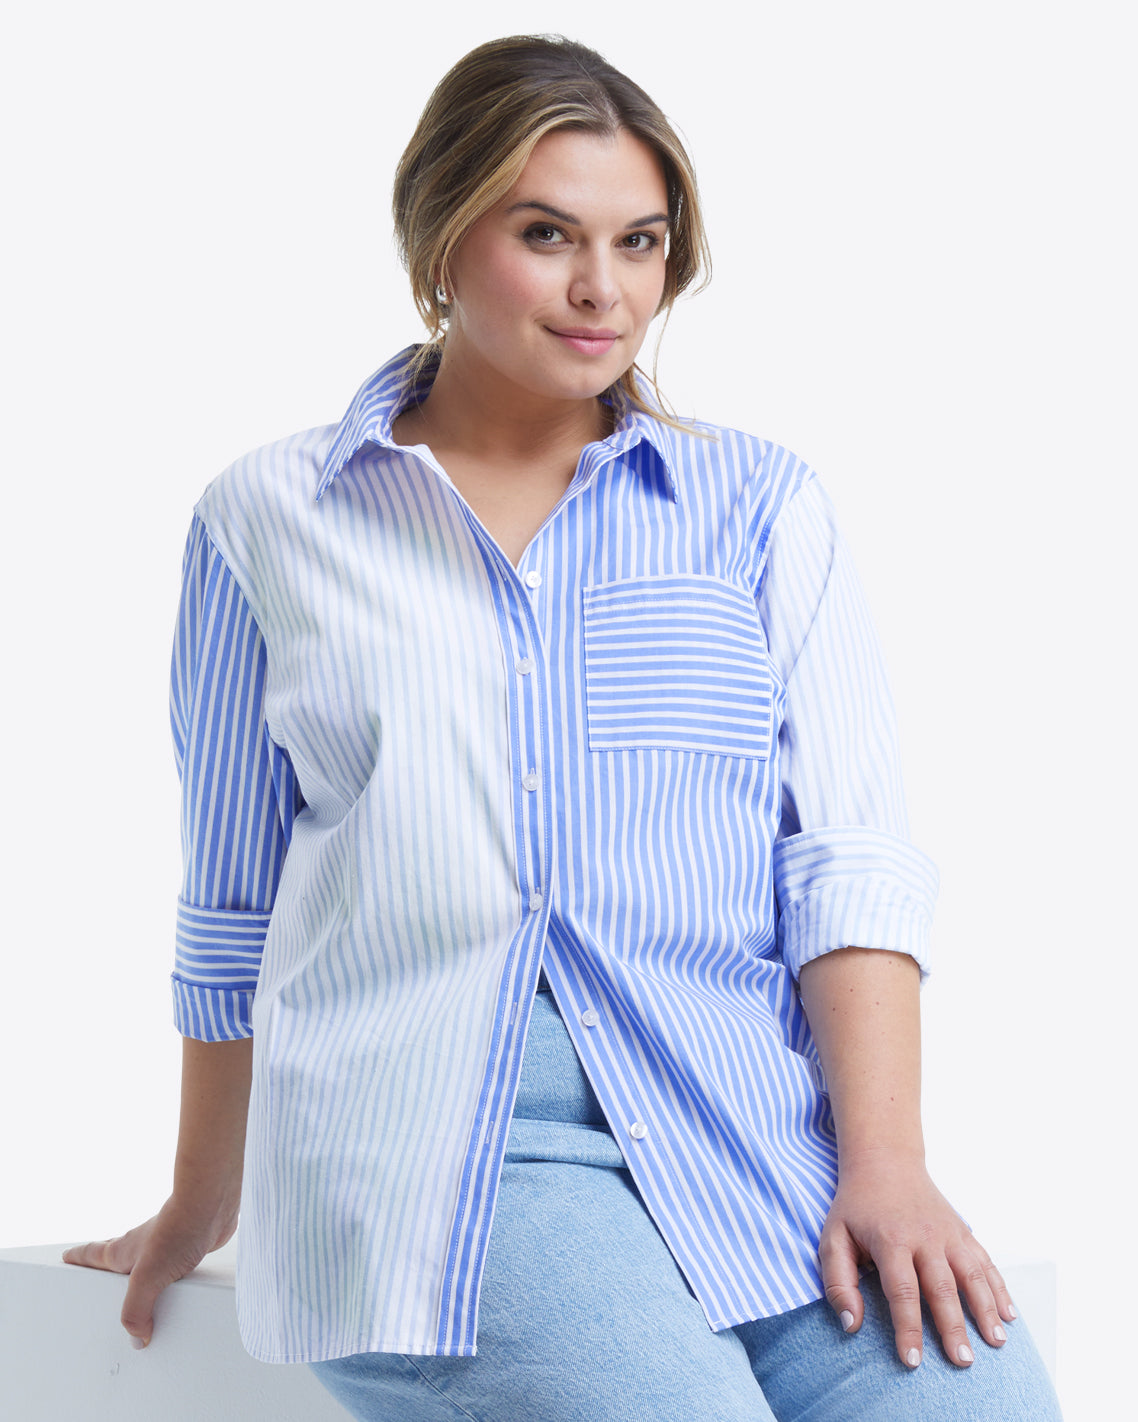 Lynn Long Sleeve Top in Blue Mixed Stripe